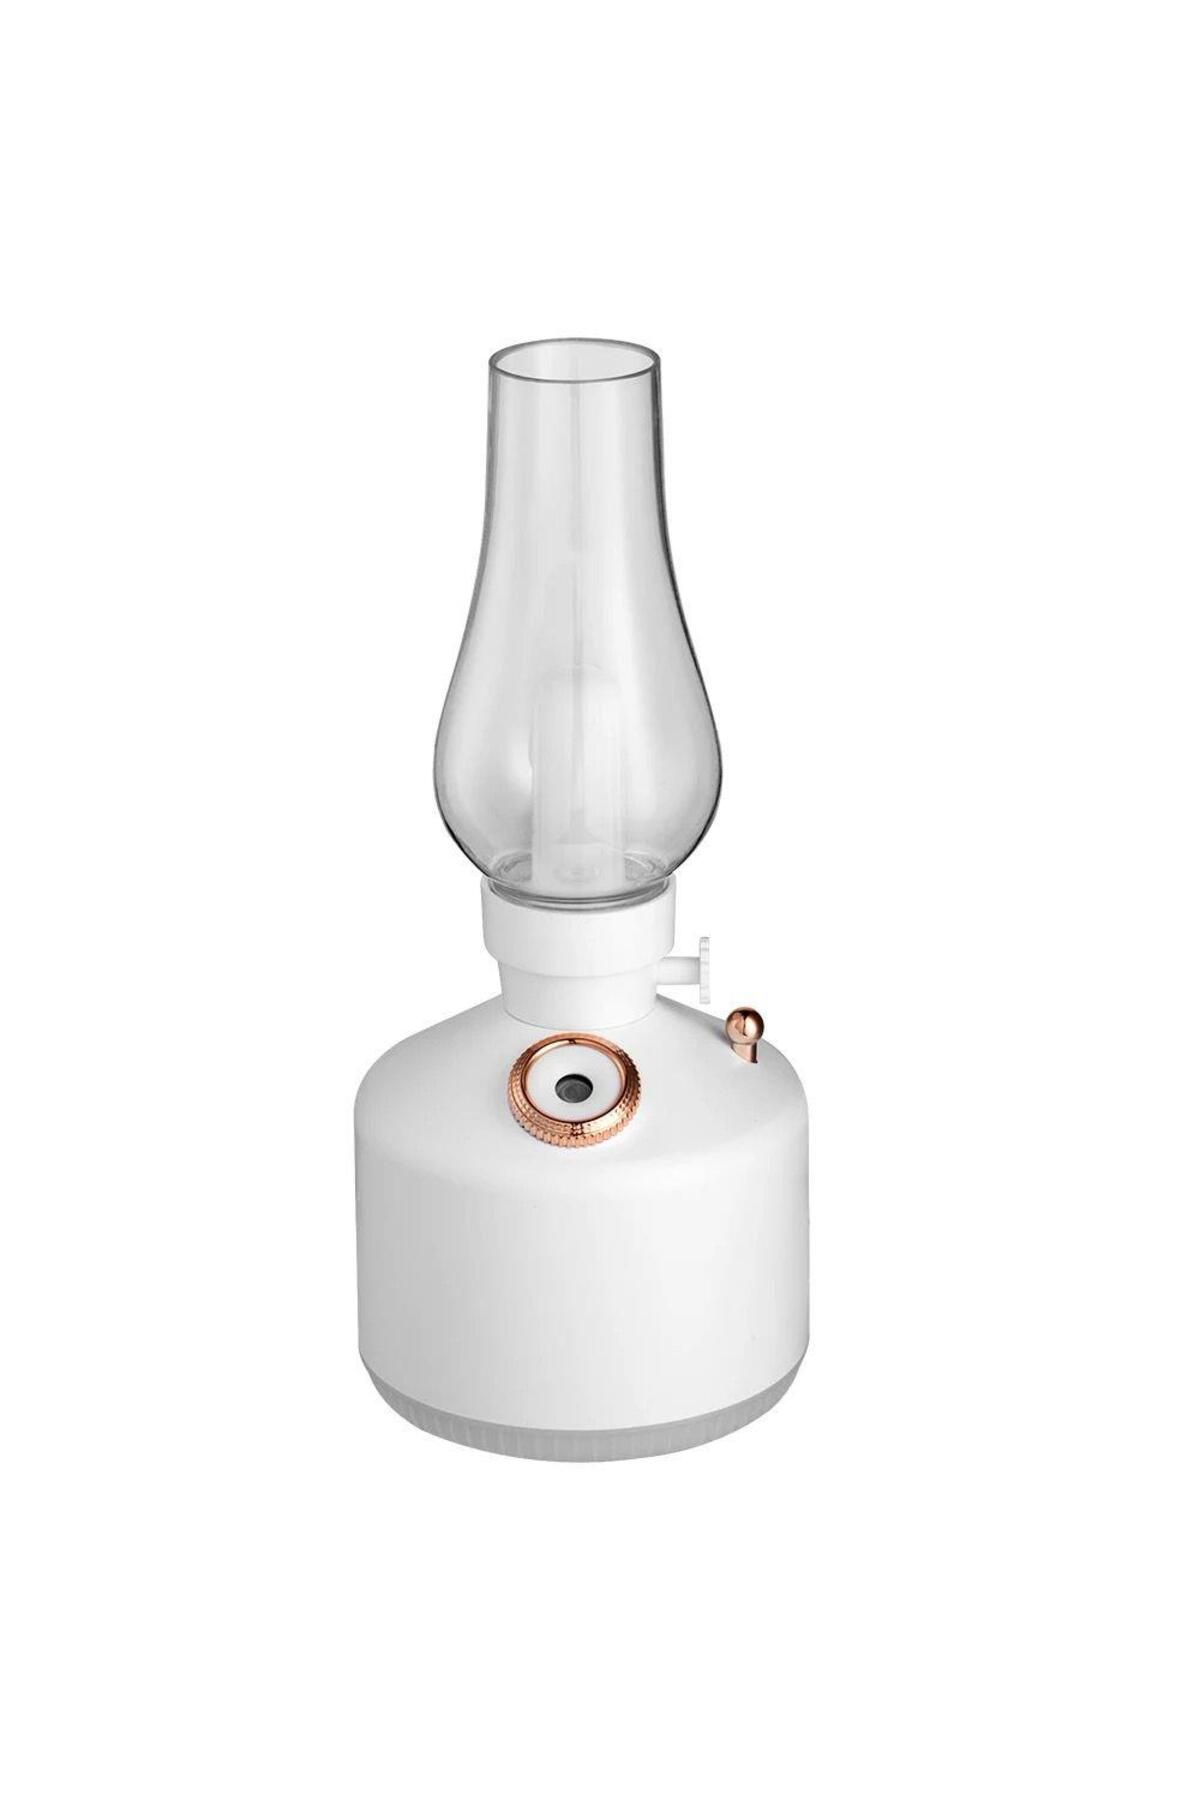 ROSSEV Humidifier Şarj Edilebilir Beyaz Dekoratif Lamba Kandil 300ml